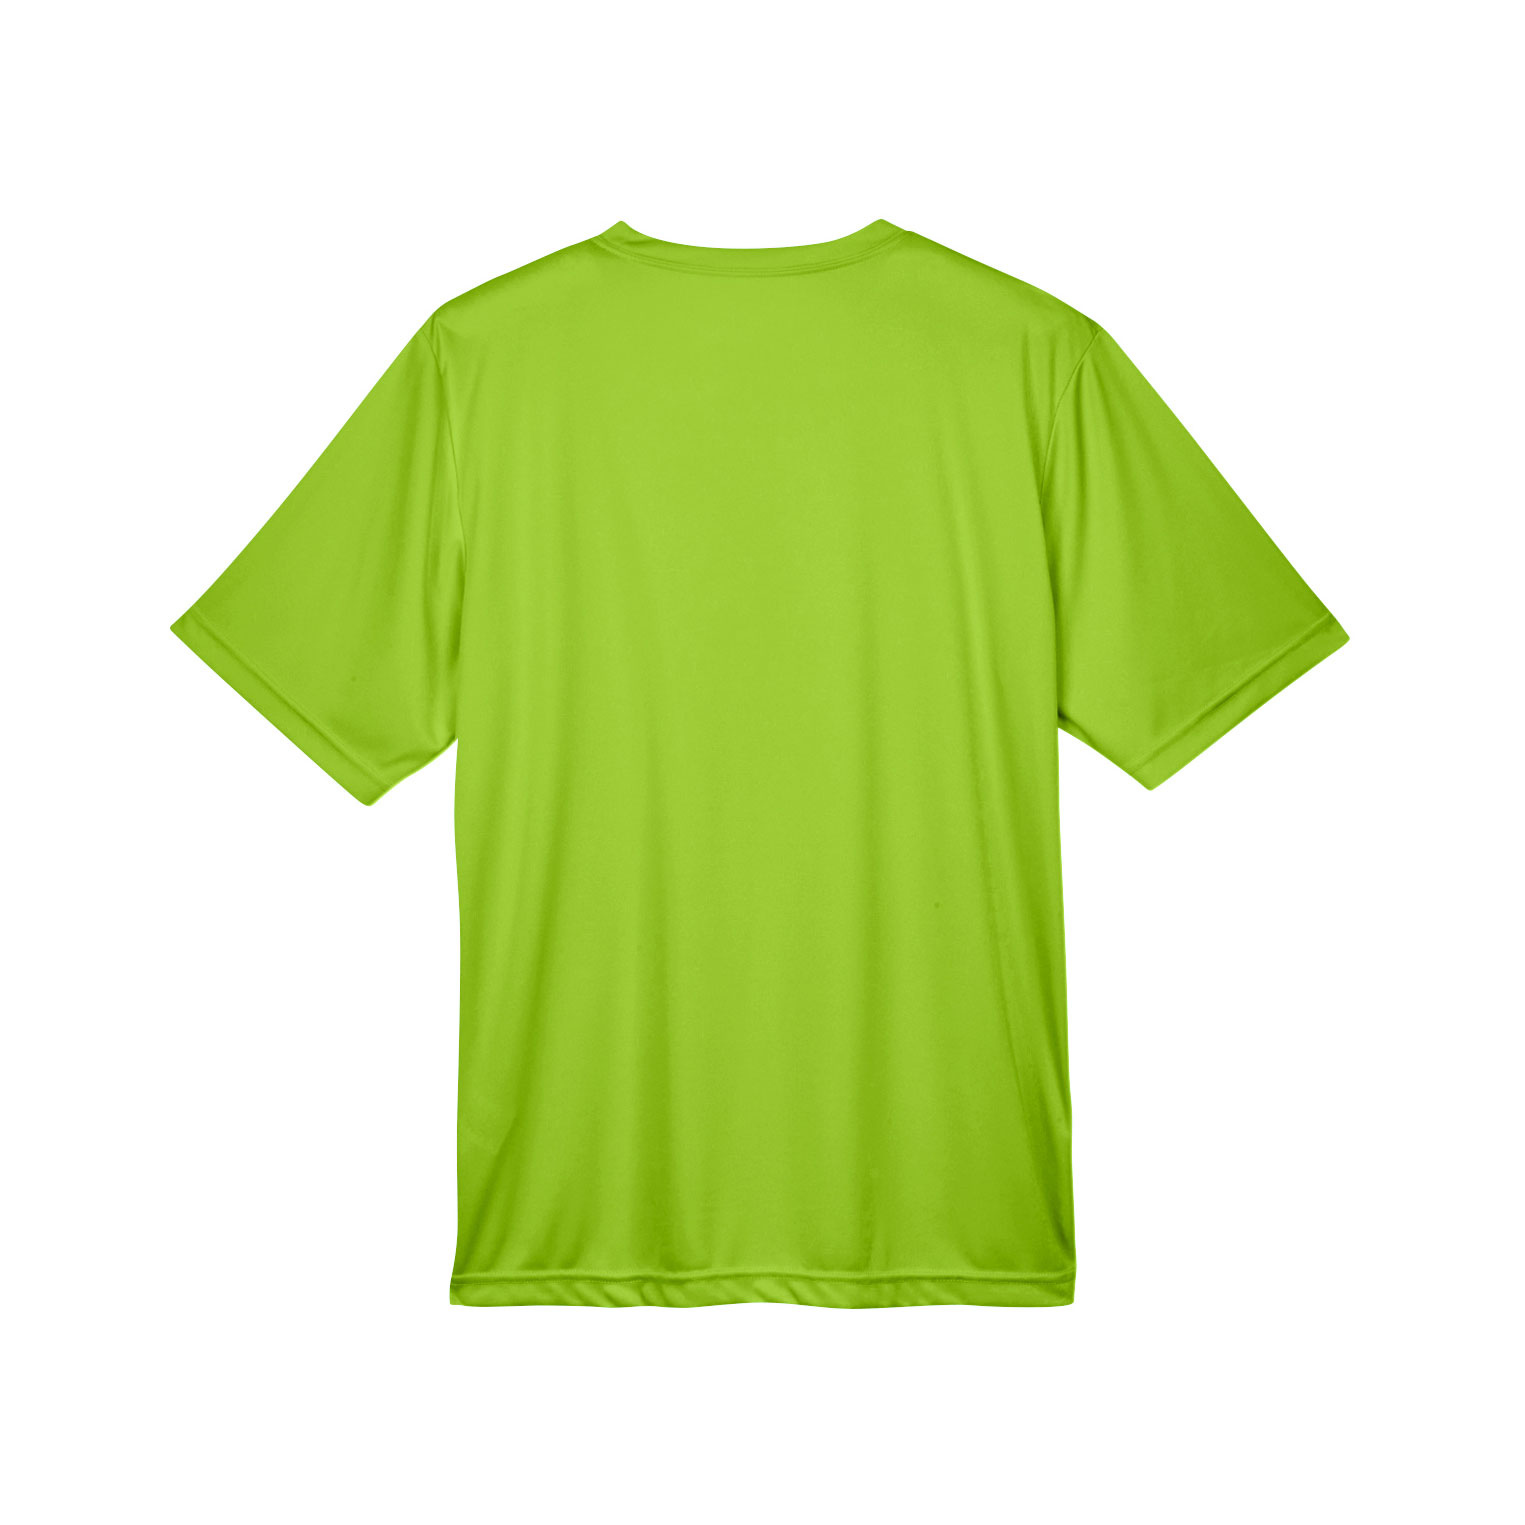 Team 365 TT11 Men's Zone Performance T-Shirt - Acid Green | Full Source